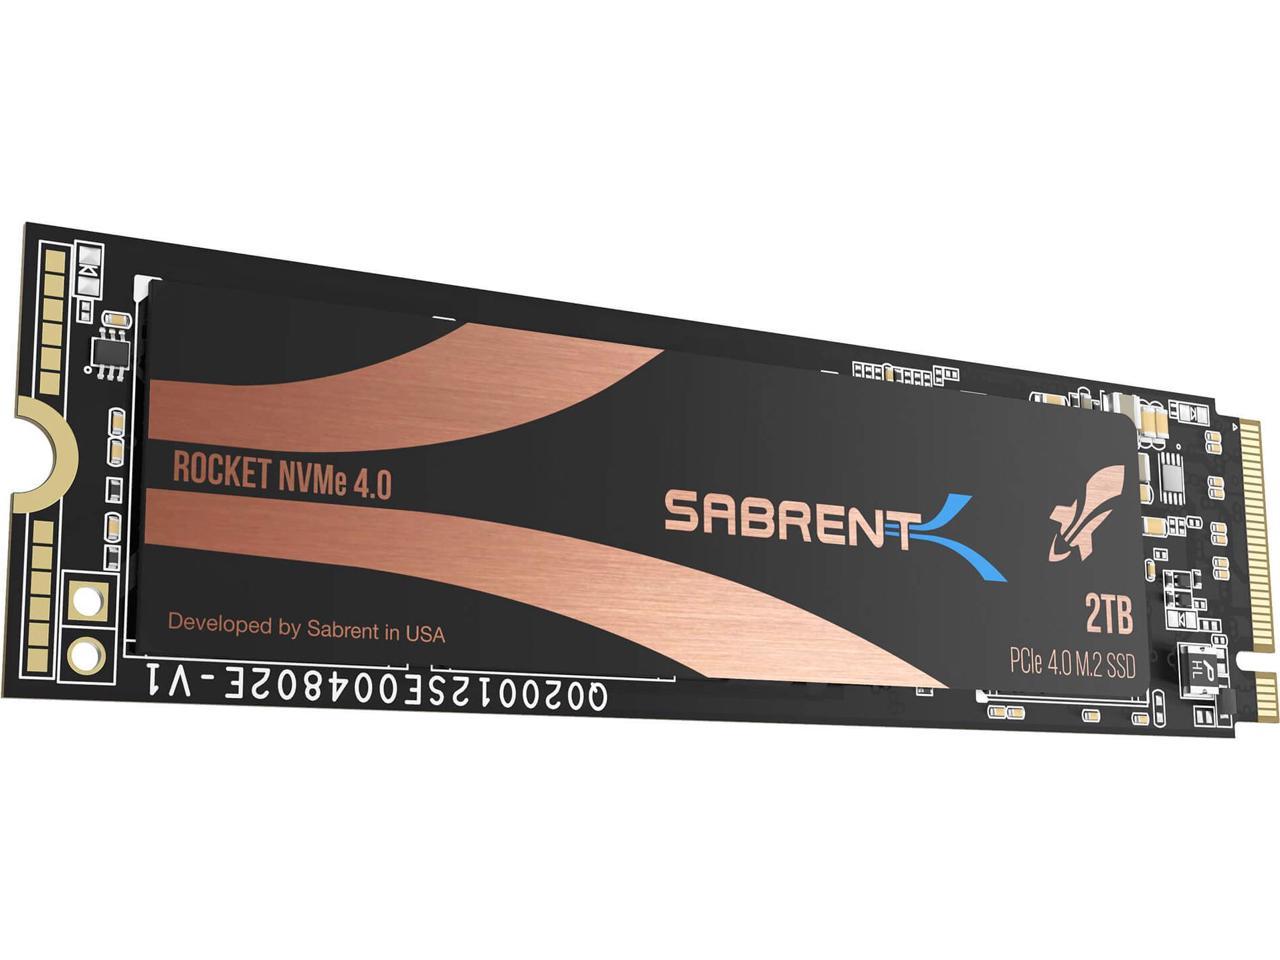 Sabrent 2TB Rocket NVMe 4.0 Gen4 SSD $218.44